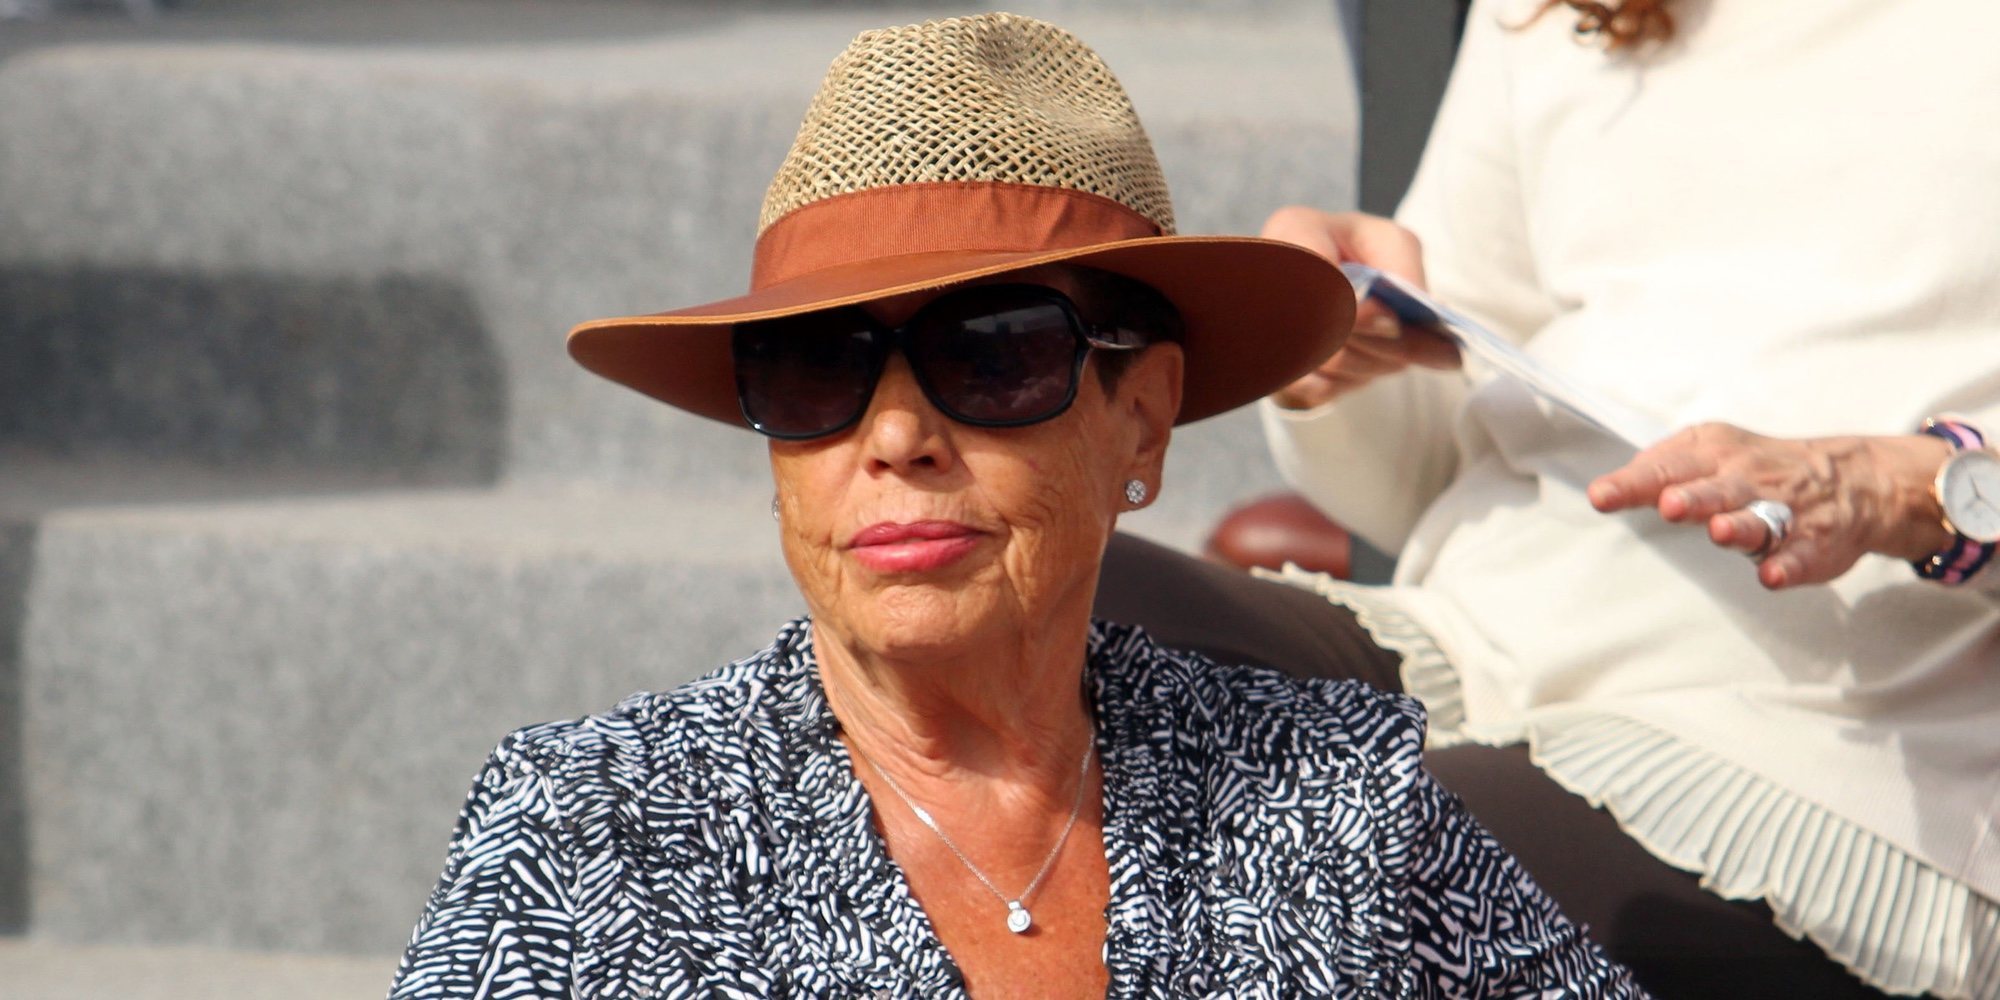 Marisa Vicario, el mayor apoyo de Arantxa Sánchez Vicario en su divorcio, se traslada a vivir a Miami